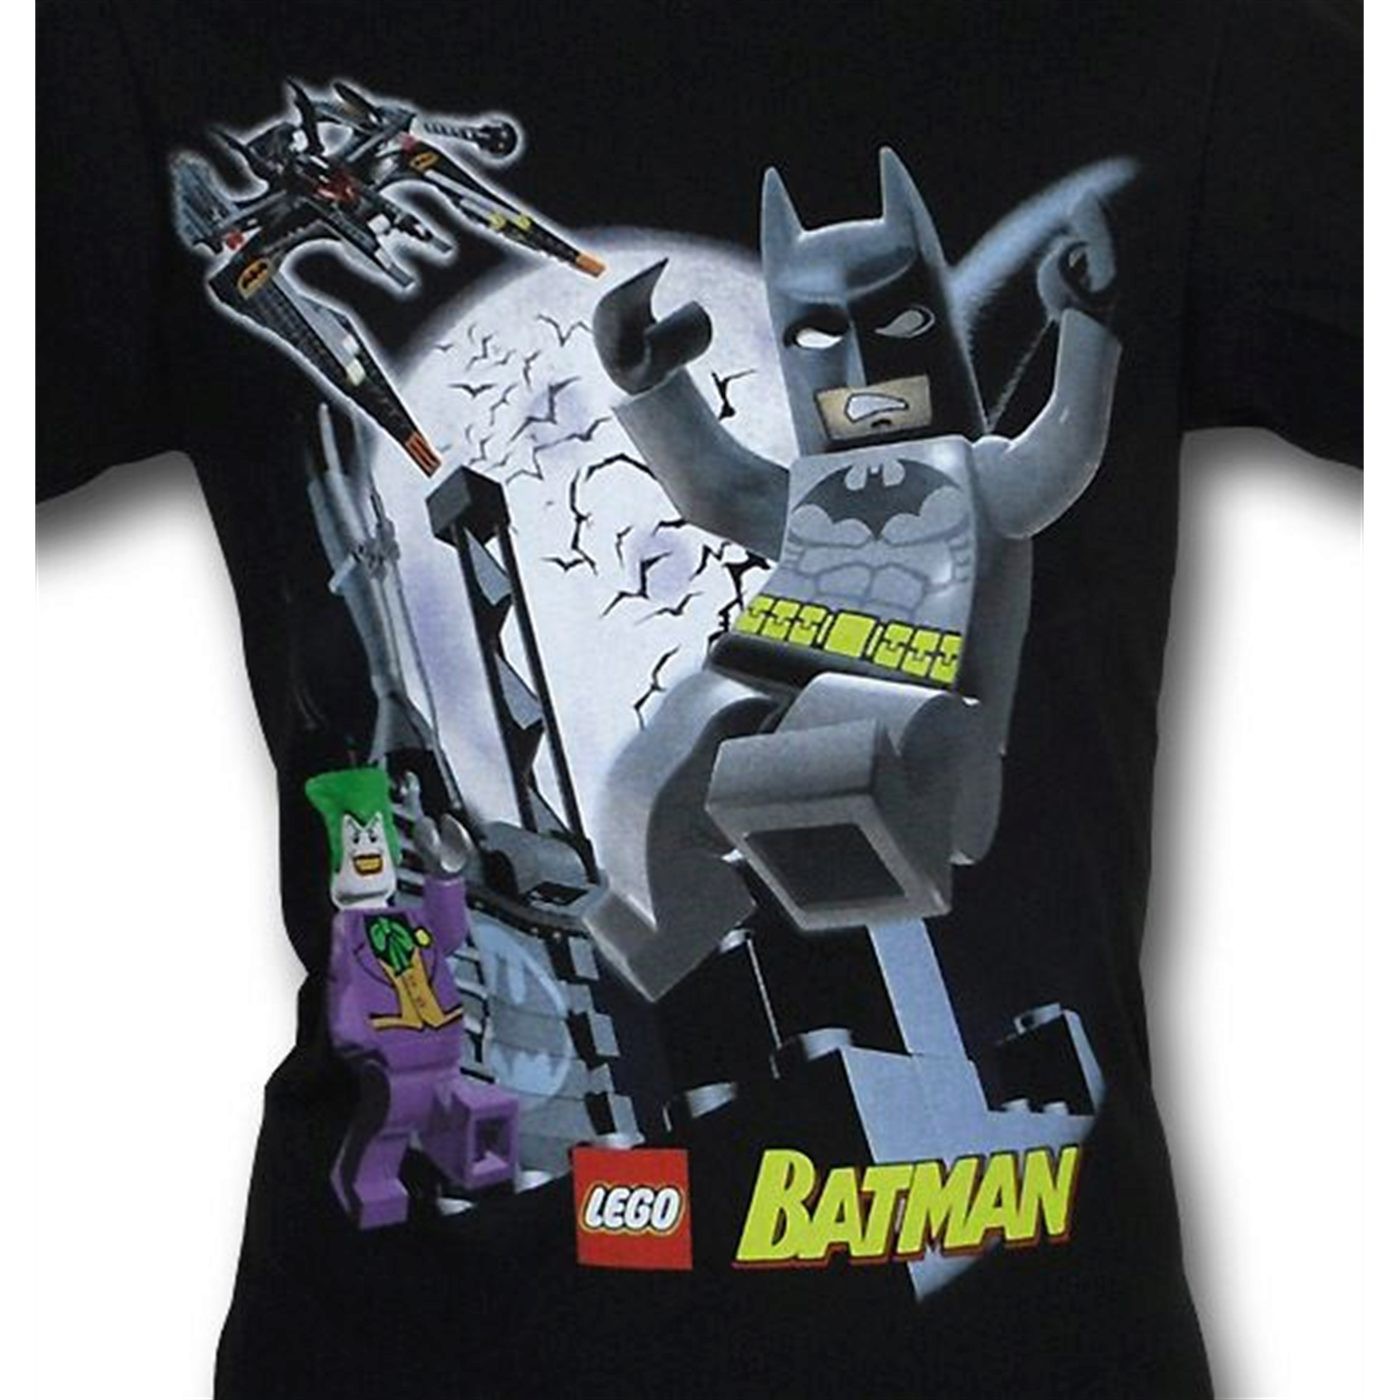 Batman Youth Lego T-Shirt